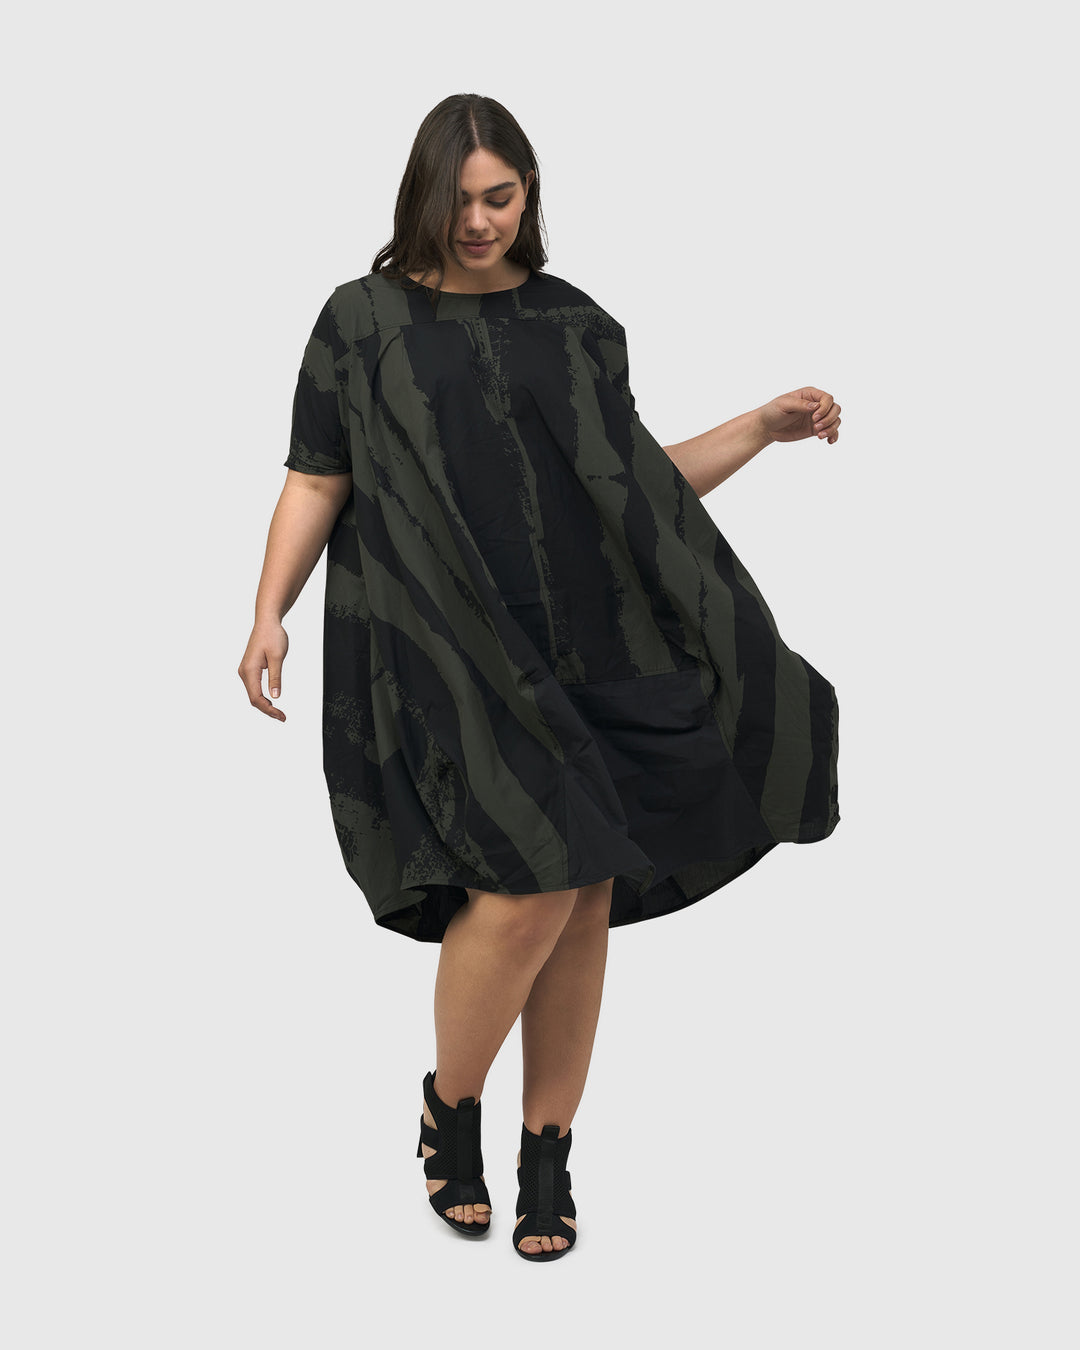 Urban Sake Muumuu Dress, Khaki